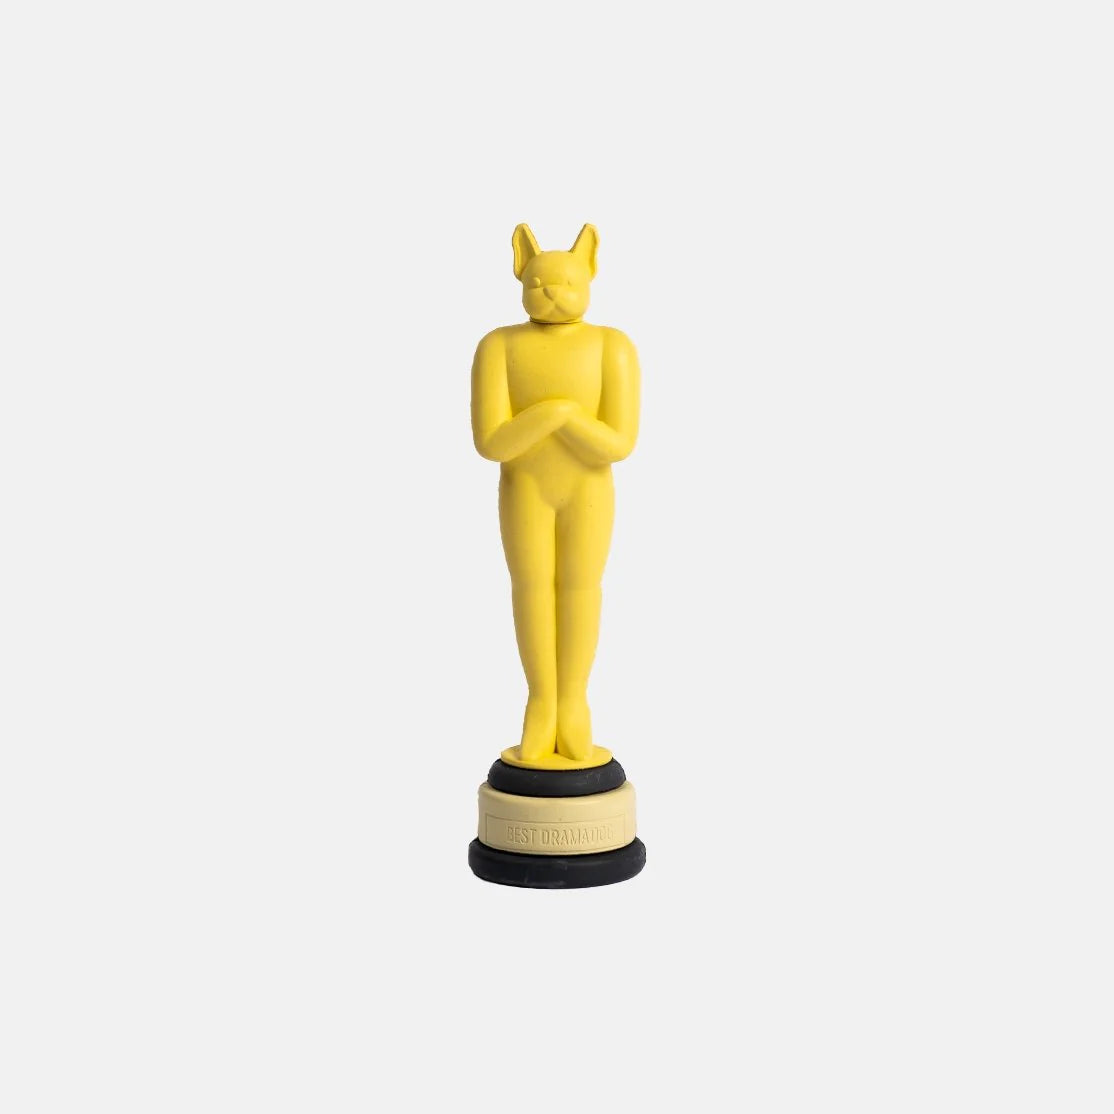 Der Oscar